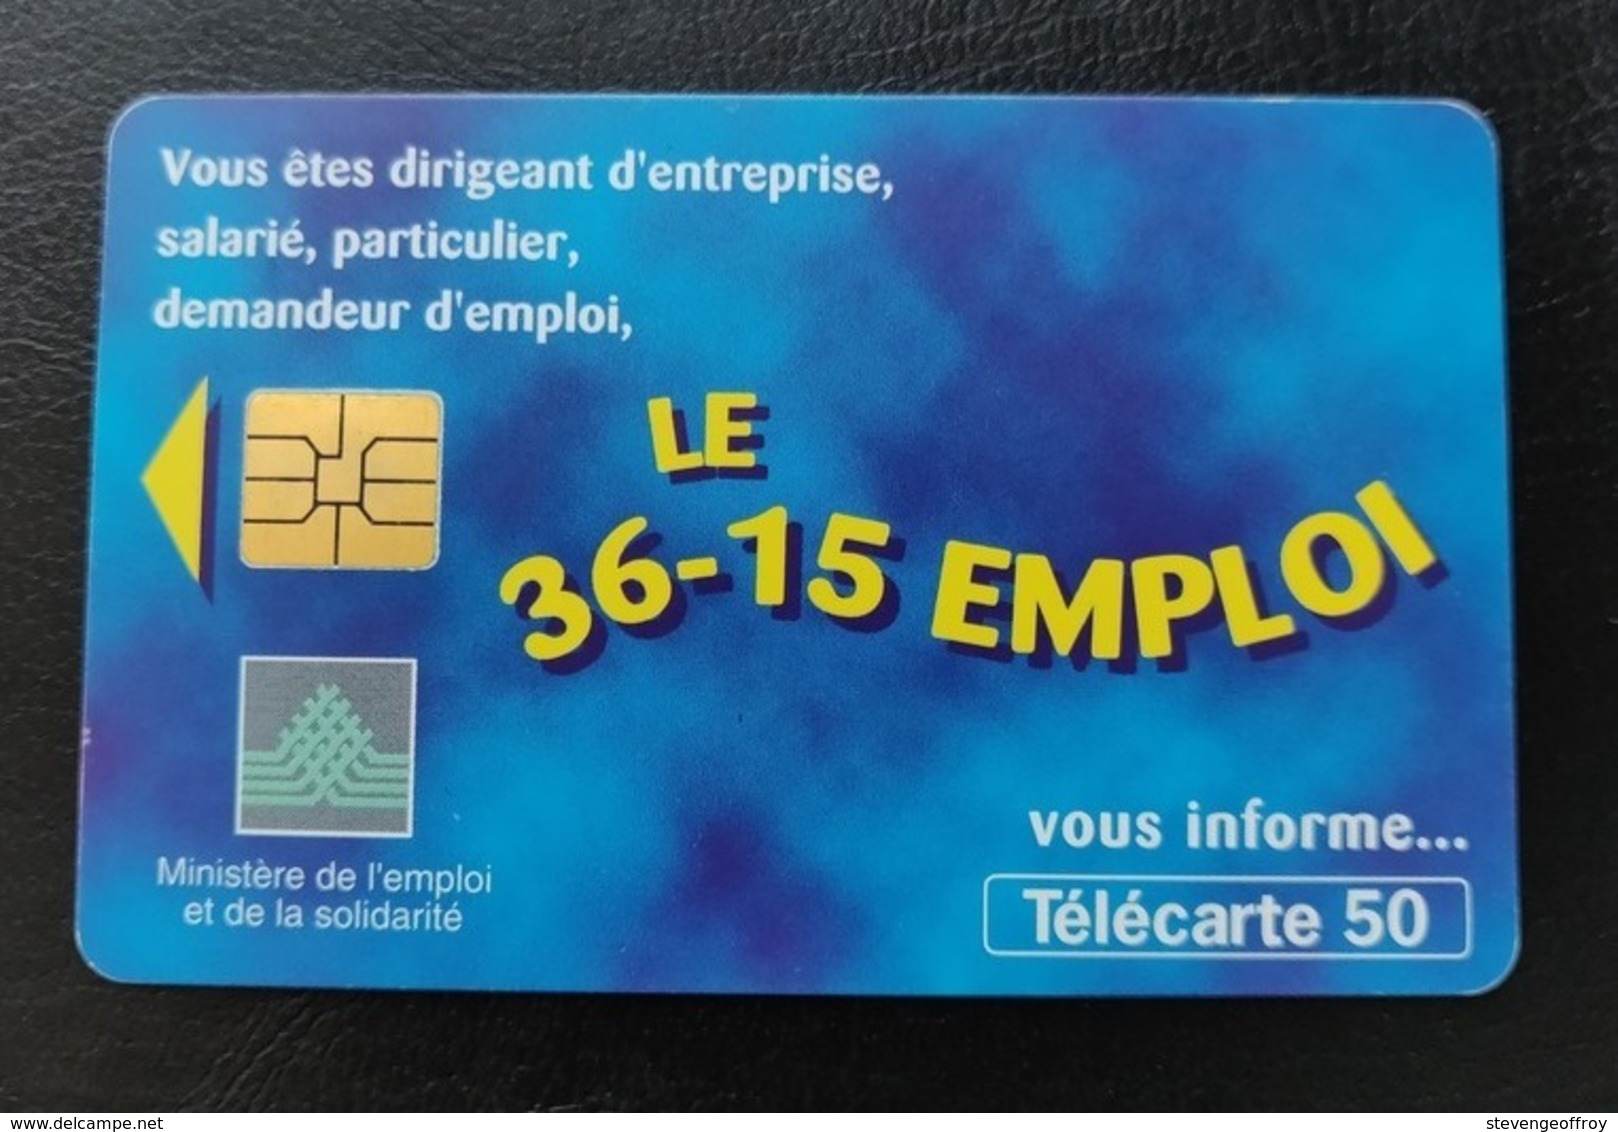 Telecarte France Publique 1997 3615 Emploi Chiffre Numéro - 1997